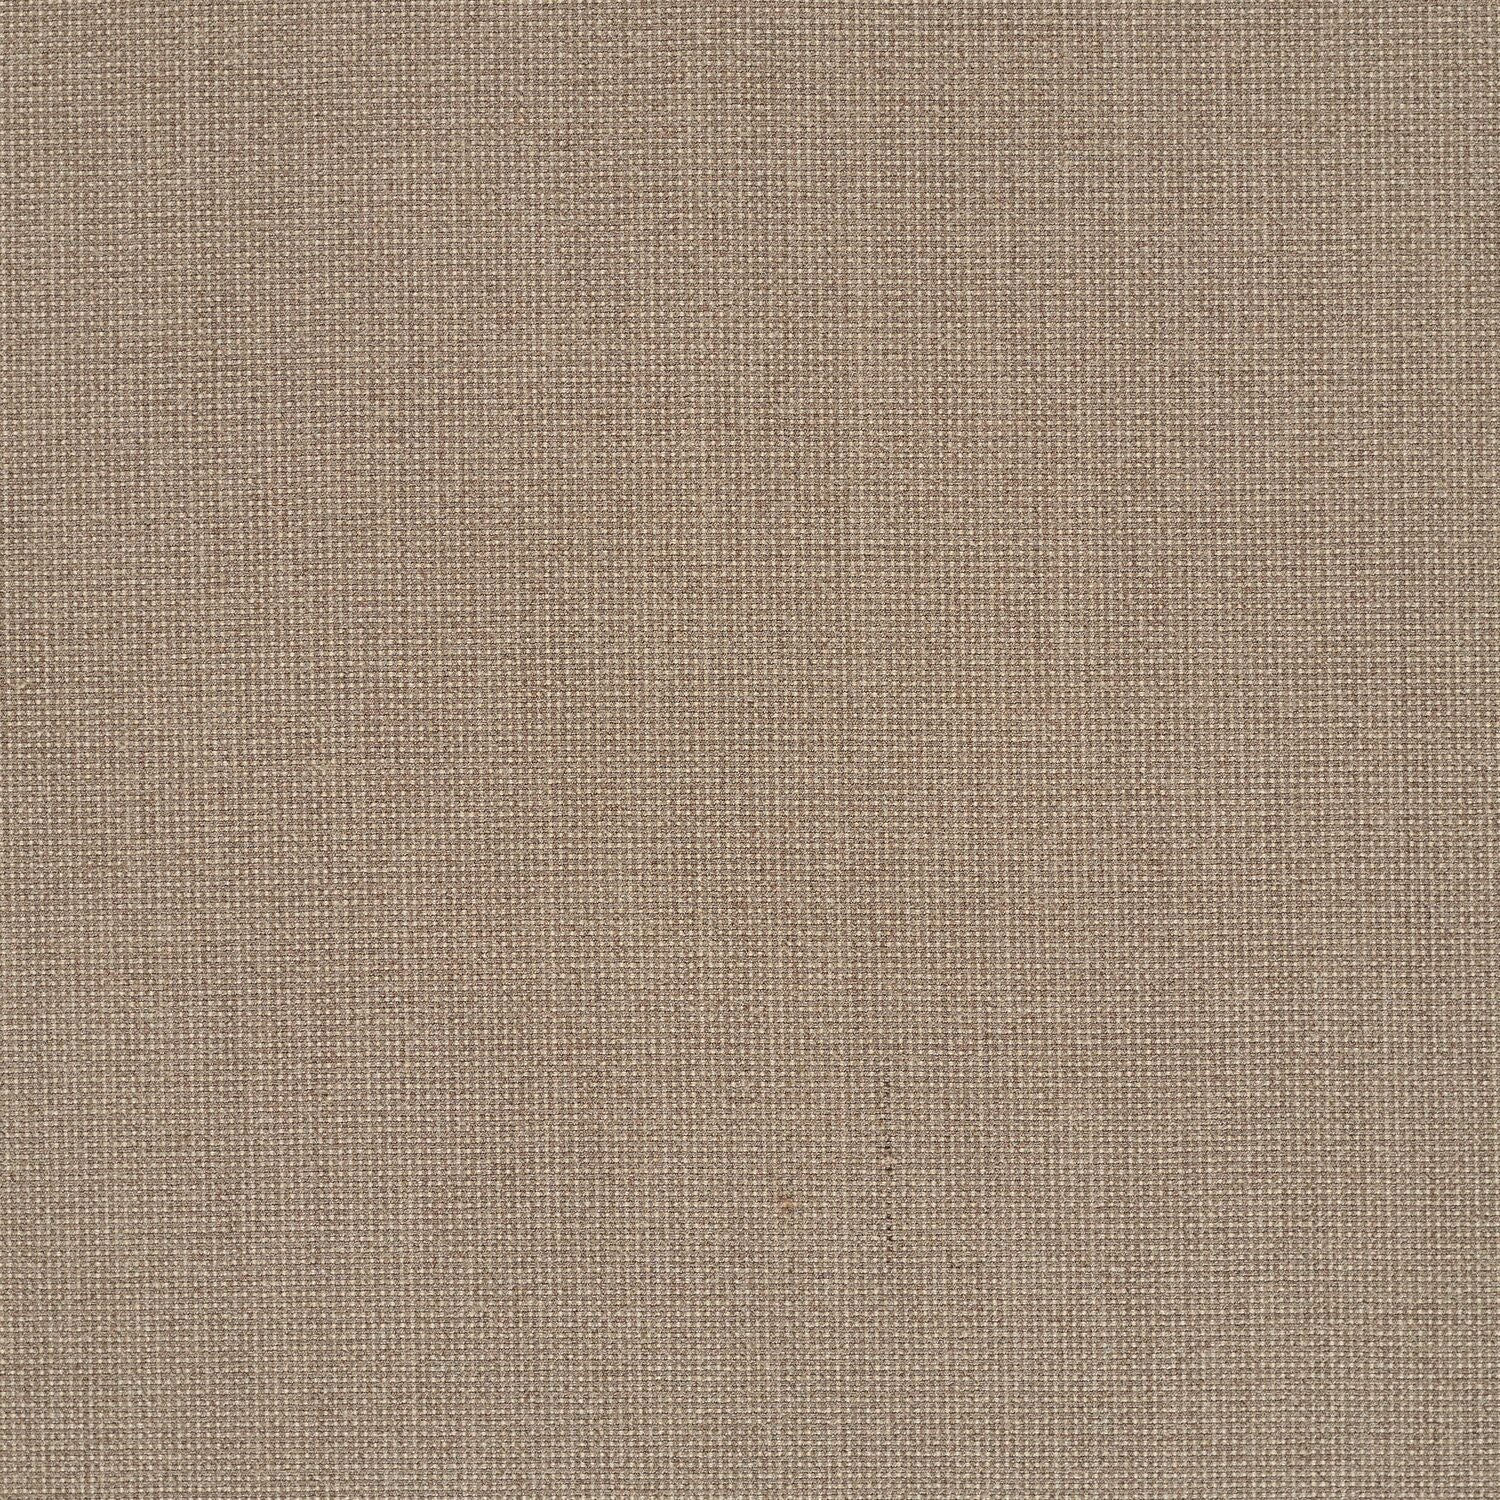 Elastic Wool - Seed - 4067 - 05